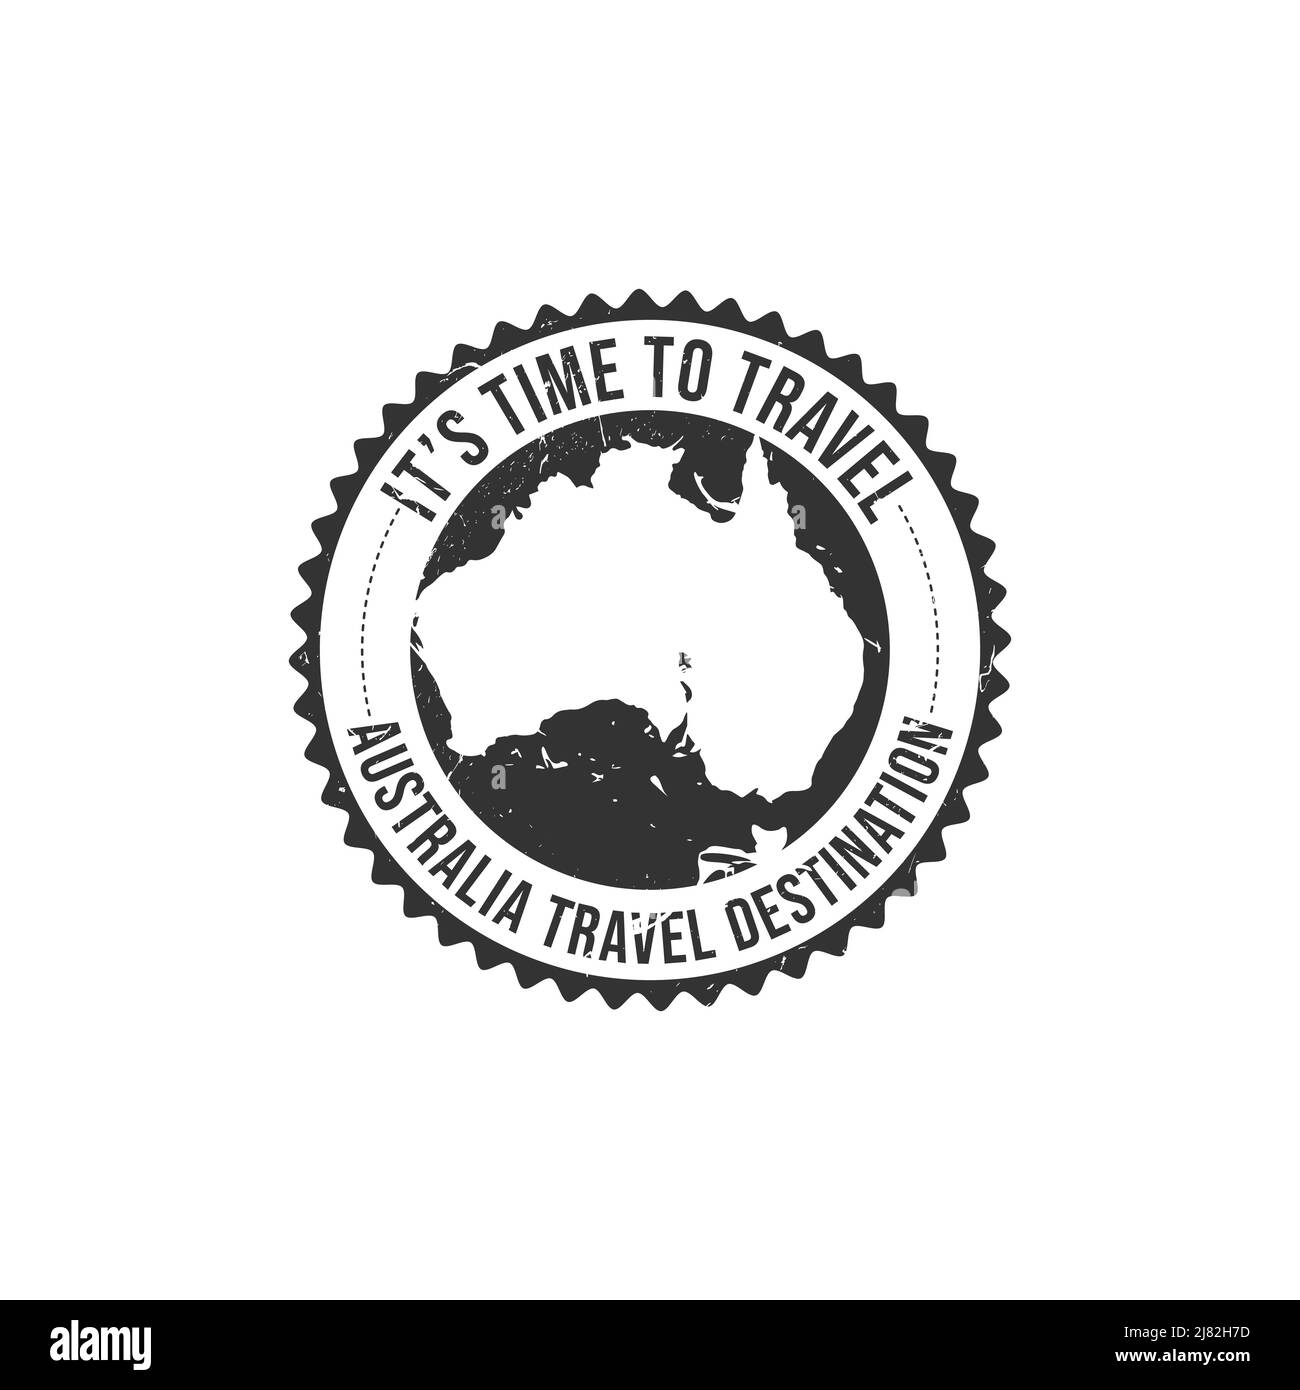 Gratrez le tampon en caoutchouc avec le texte icône Australie carte destination de voyage inscrit à l'intérieur du tampon. Australie destination voyage grunge timbre Illustration de Vecteur